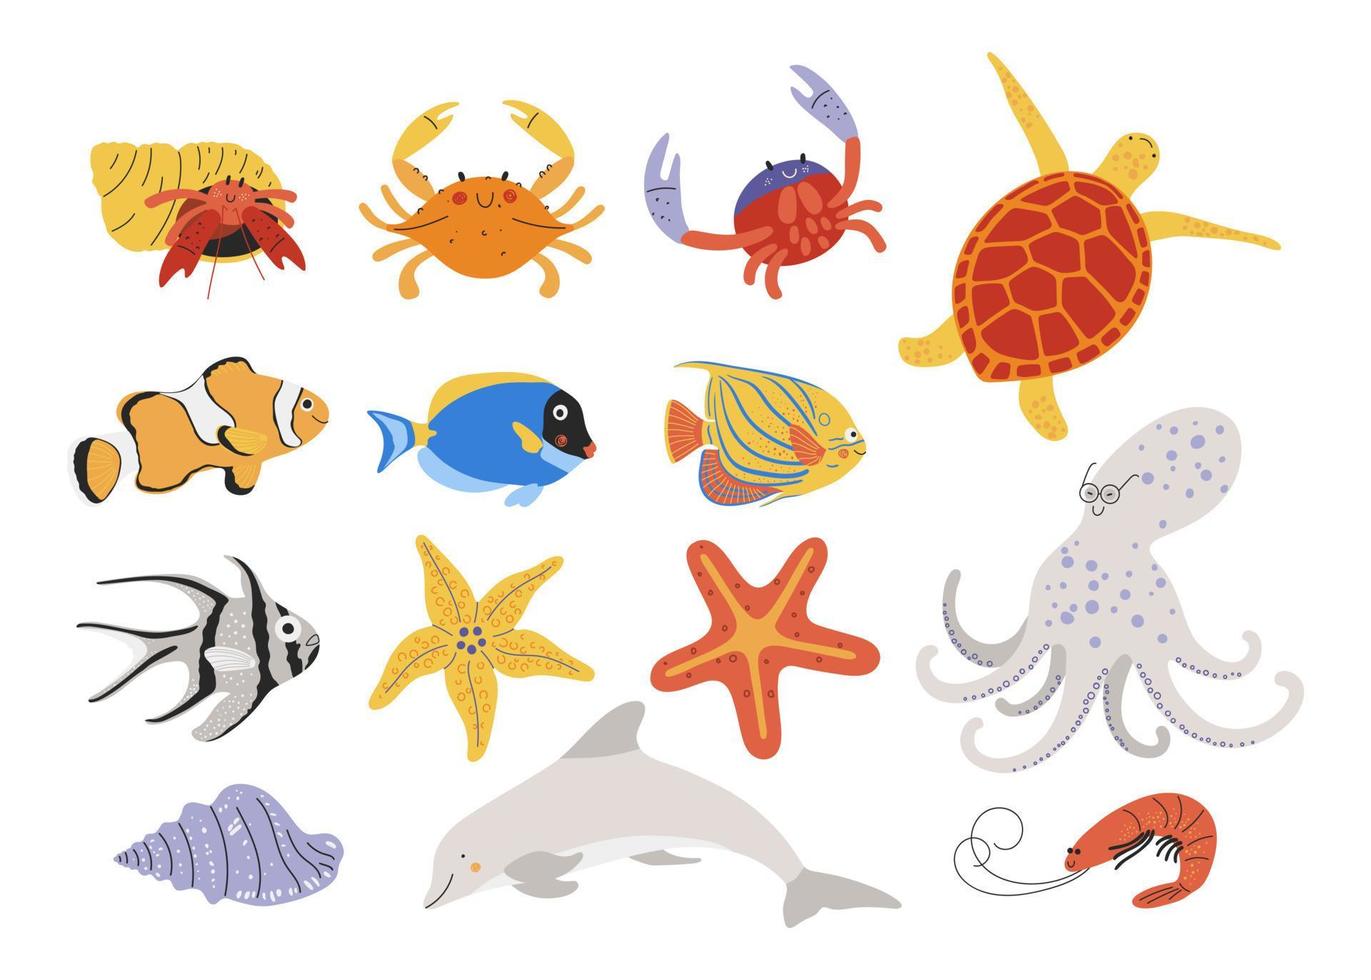 impostato di mano disegnato mare creature. carino oceano vita personaggi come come pesce, granchio, tartaruga, delfino, gamberetto, stella marina e polpo vettore